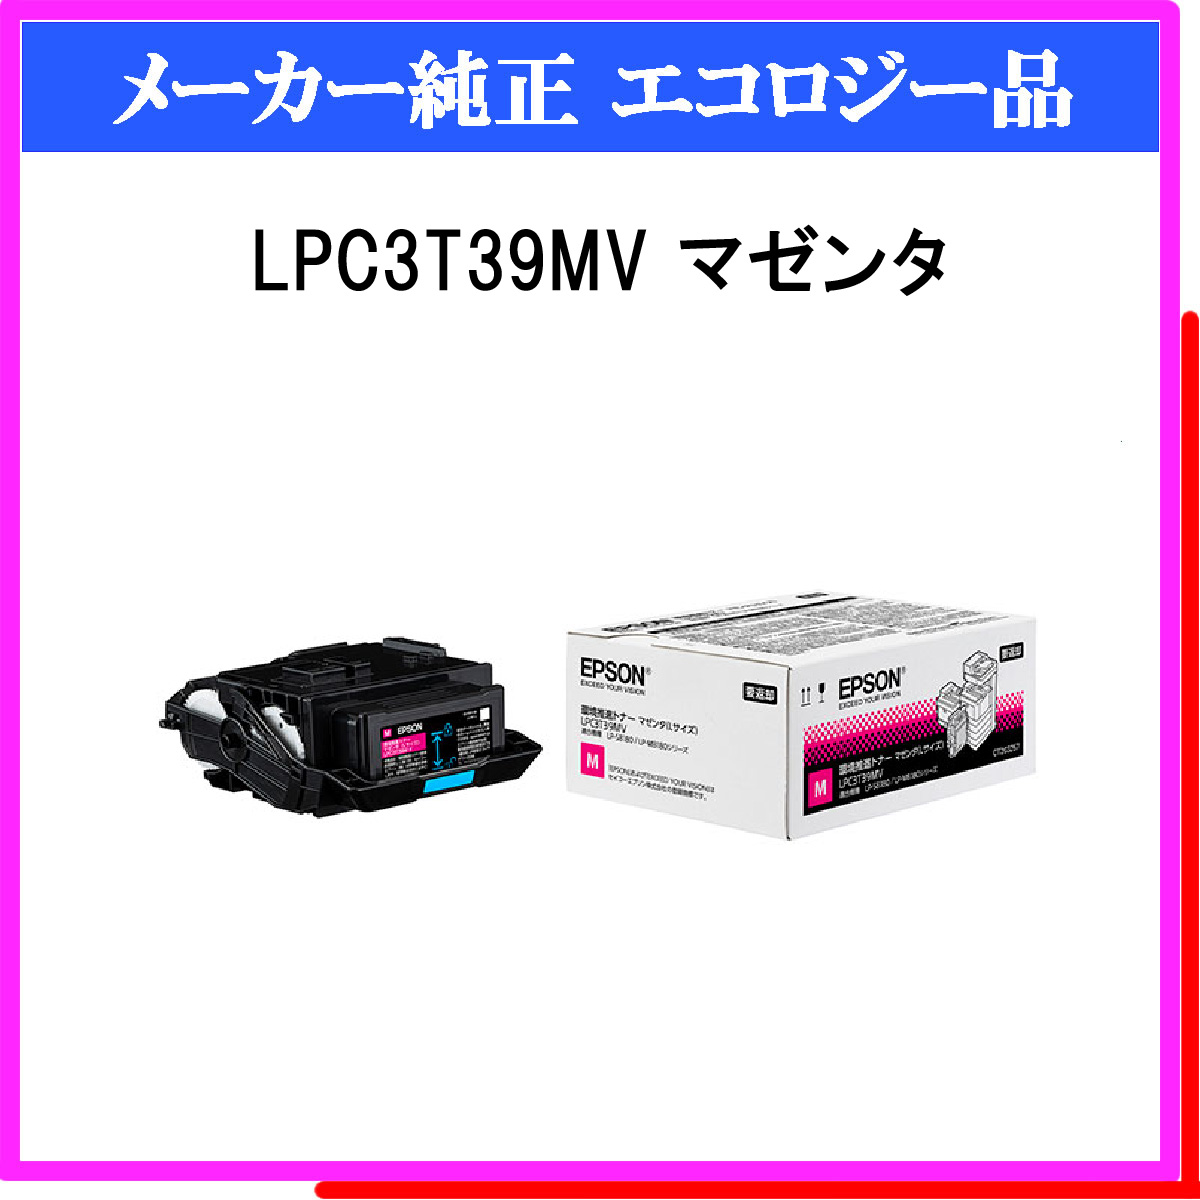 エプソン LPC3T39KV   LPC3T39CV   LPC3T39MV   LPC3T39YV 環境推進トナー Lサイズ 4色のはトナーカートリッジです。 エプソン LPC3T39KV   LPC3T39CV   LPC3T39 - 4